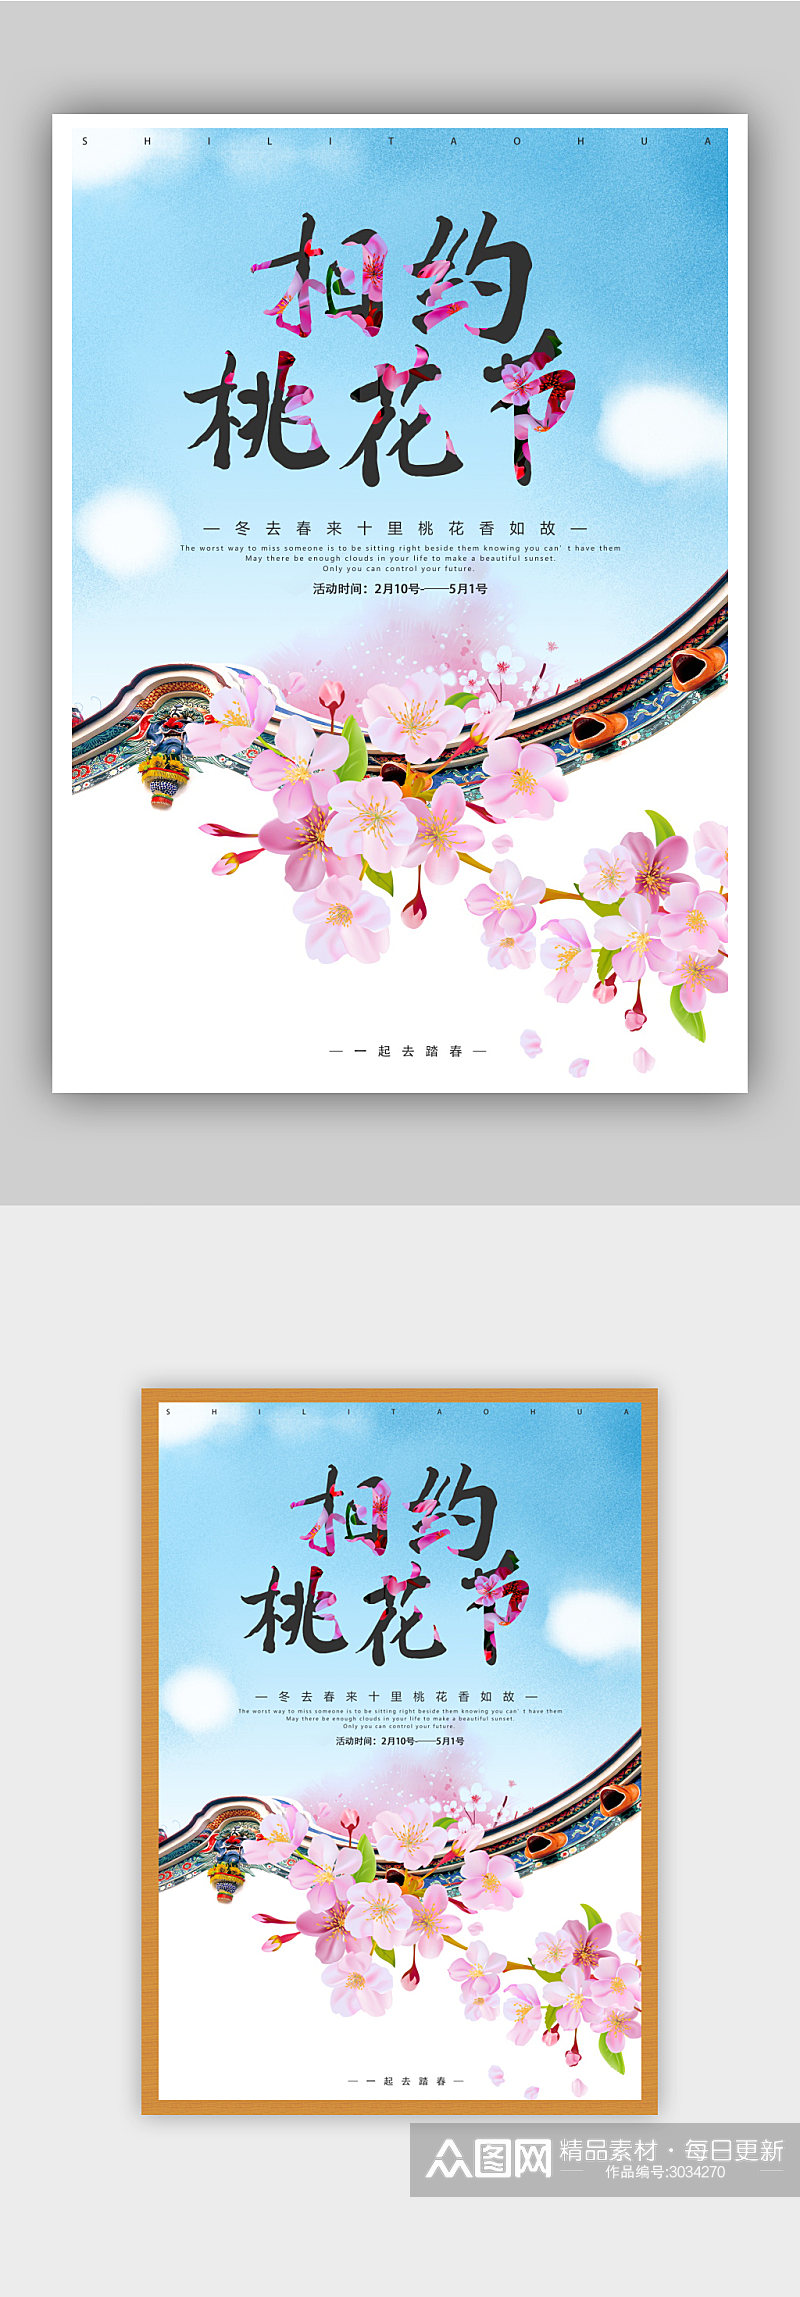 花季 粉色桃花节活动海报素材